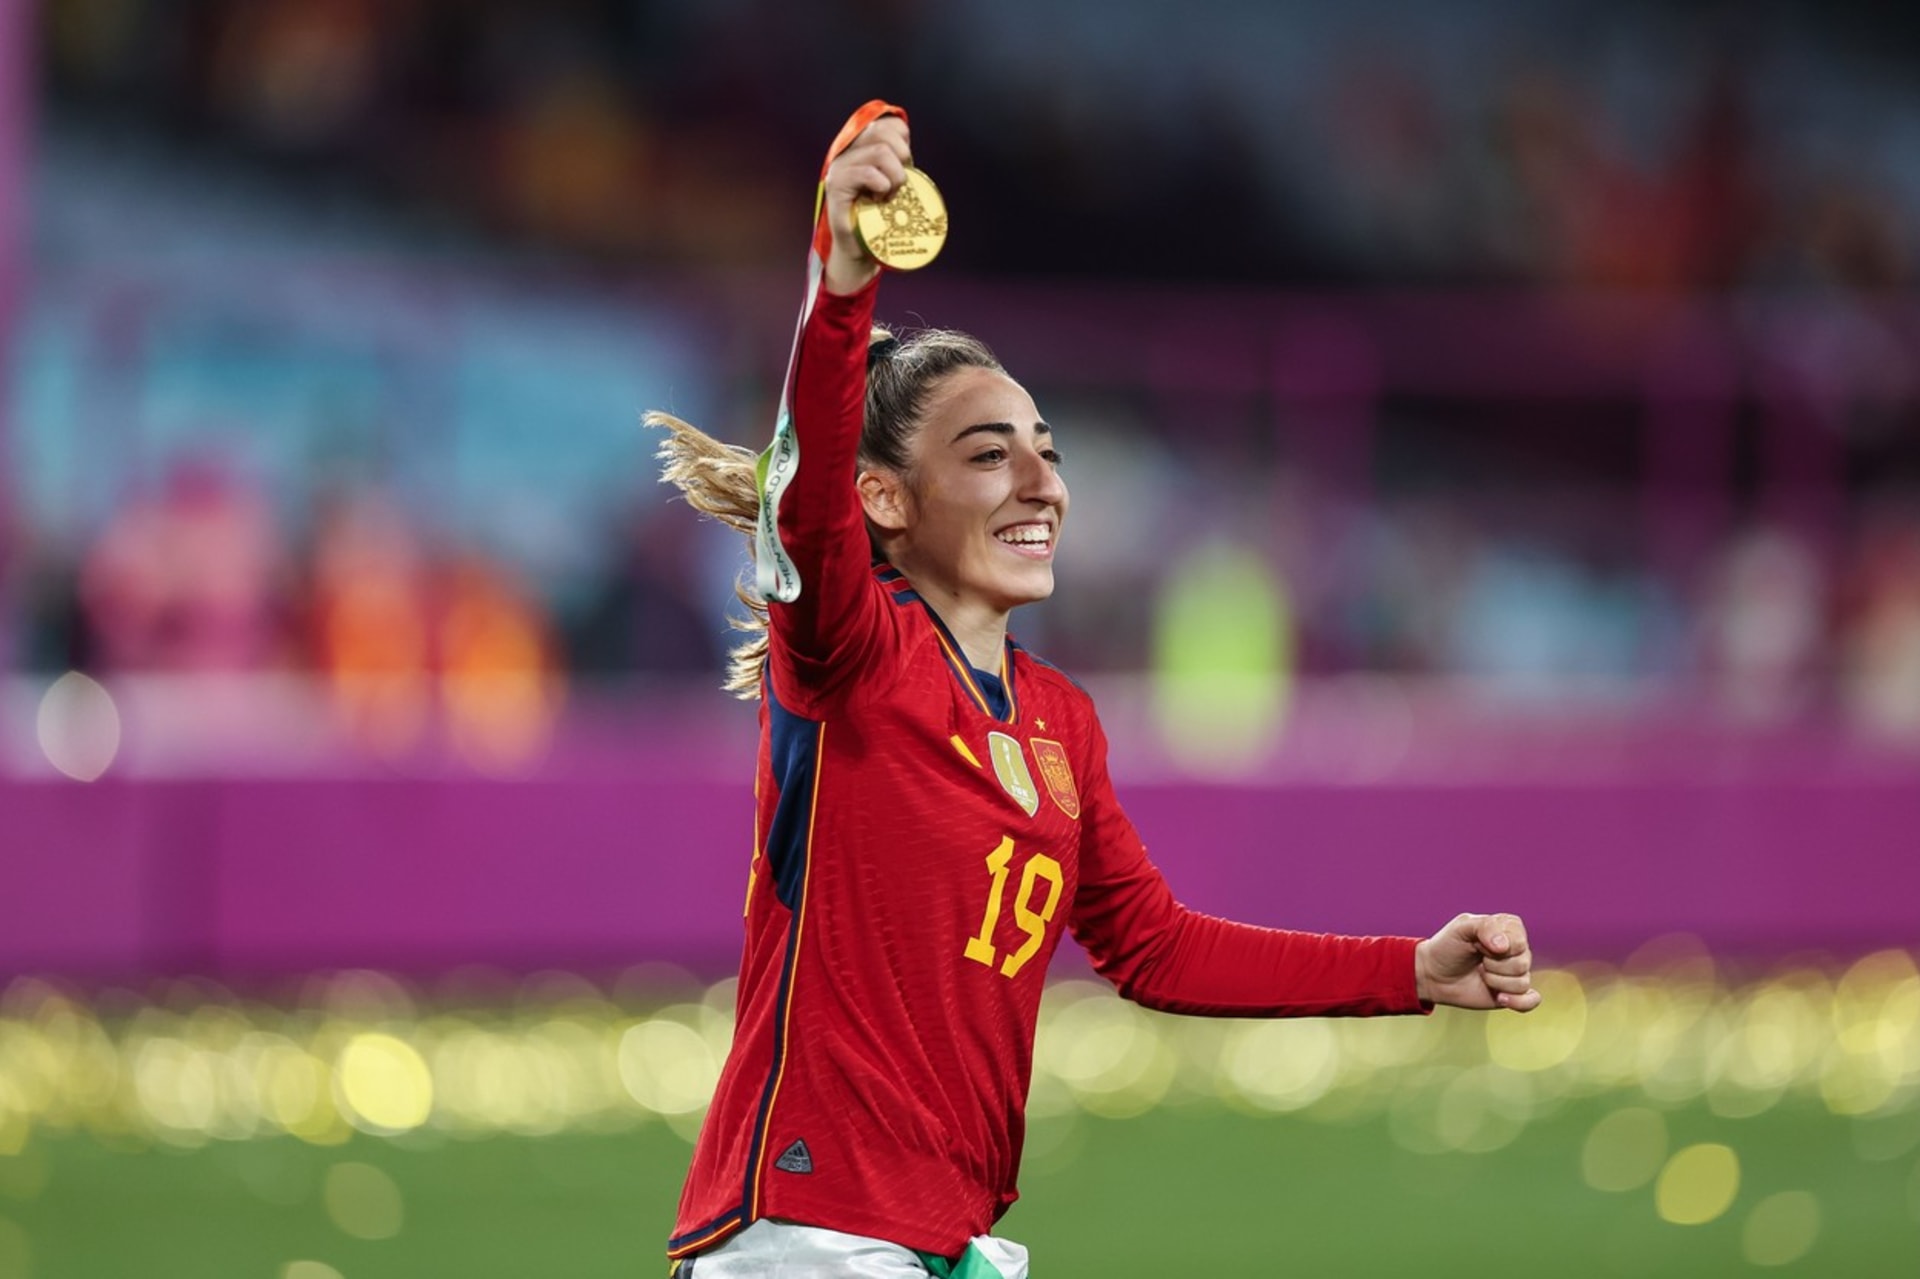 Španělská fotbalistka Olga Carmonová se ihned po finálové výhře dozvěděla, že její otec zemřel